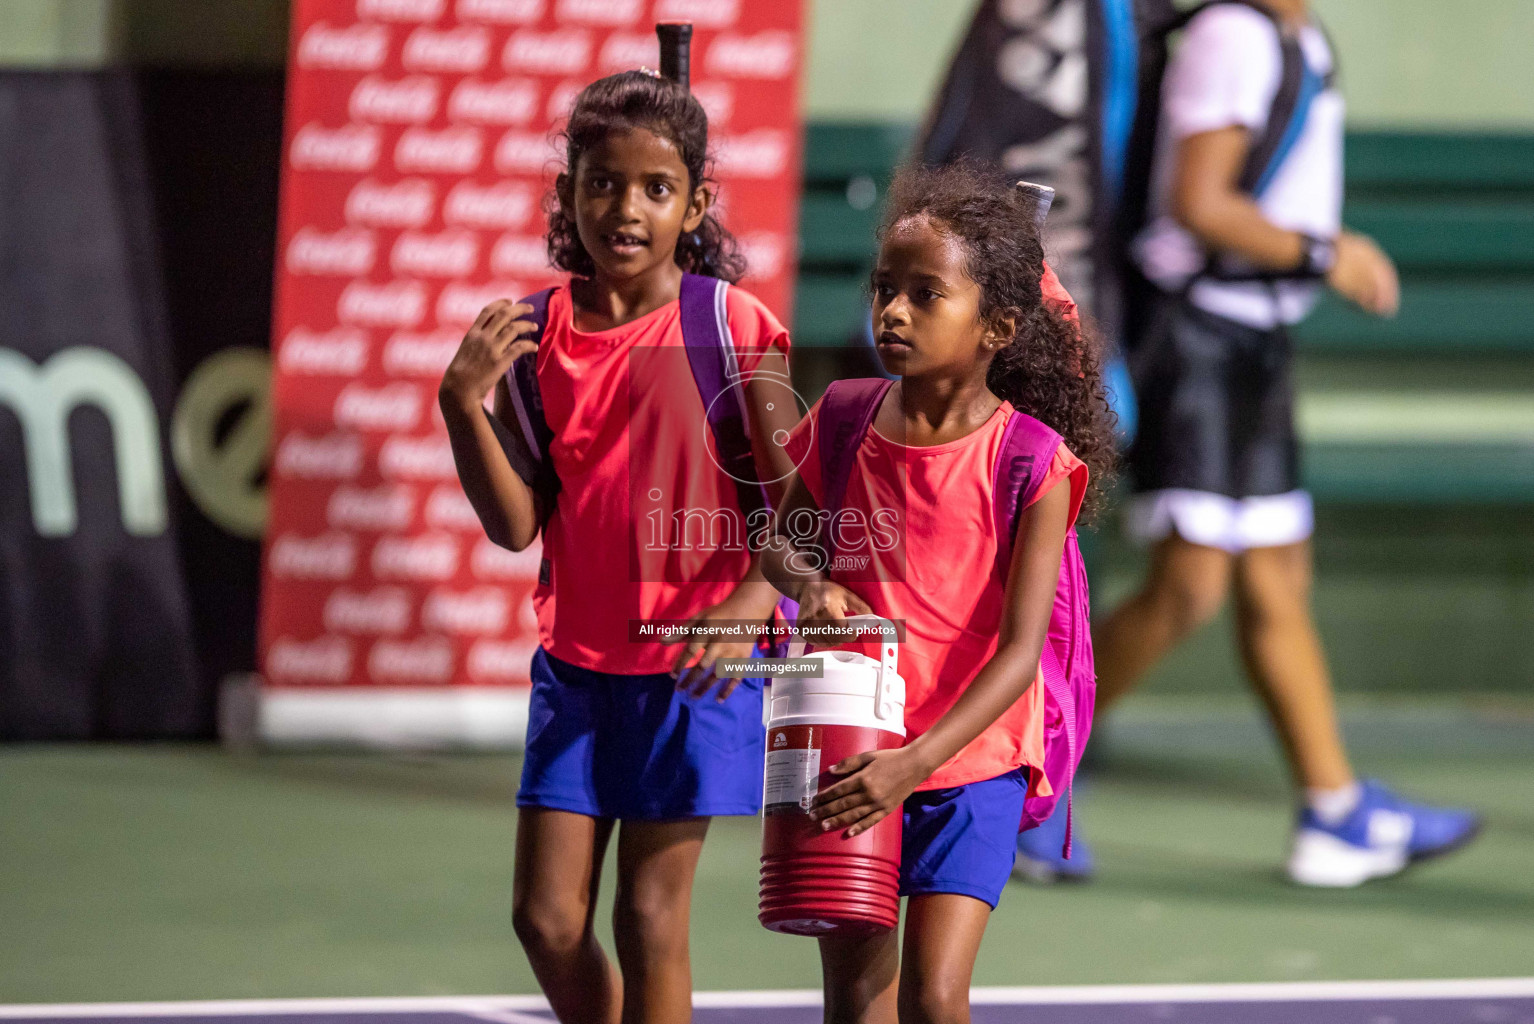 Maldives Tennis Open 2019, 12th Sep 2019, Male, Photos: Suadh Abdul Sattar/ Images.mv